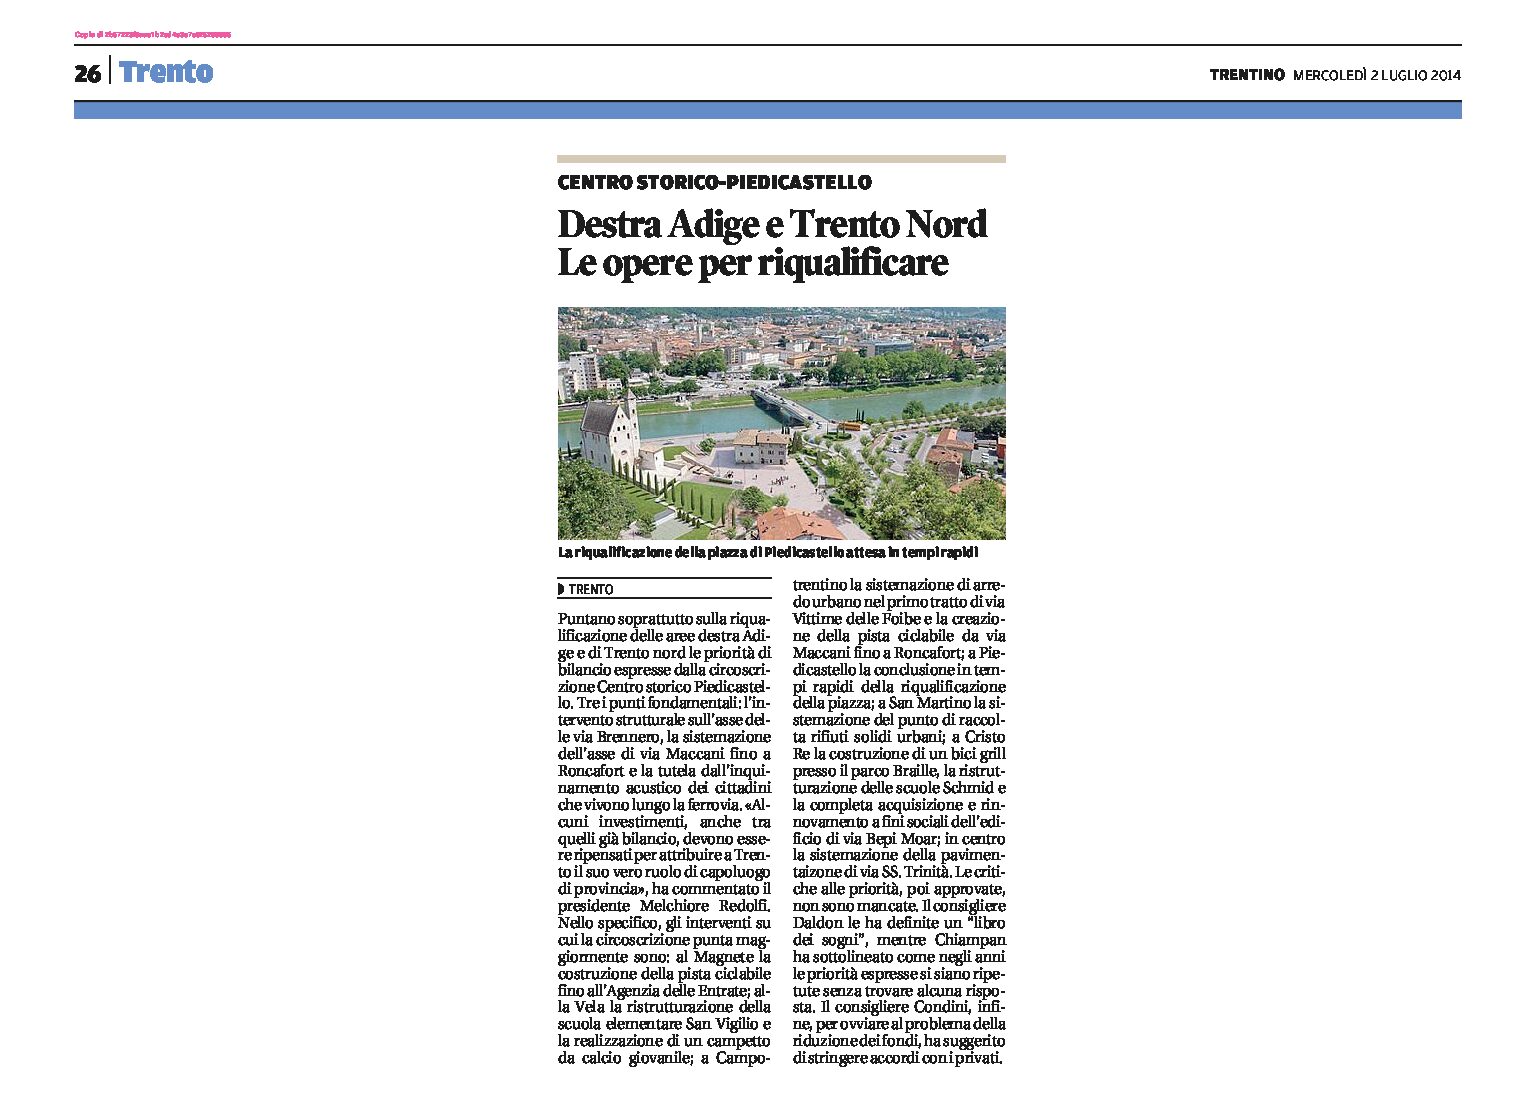 Trento: la Circoscrizione Centro storico Piedicastello punta soprattutto sulla riqualificazione della Destra Adige e di Trento Nord